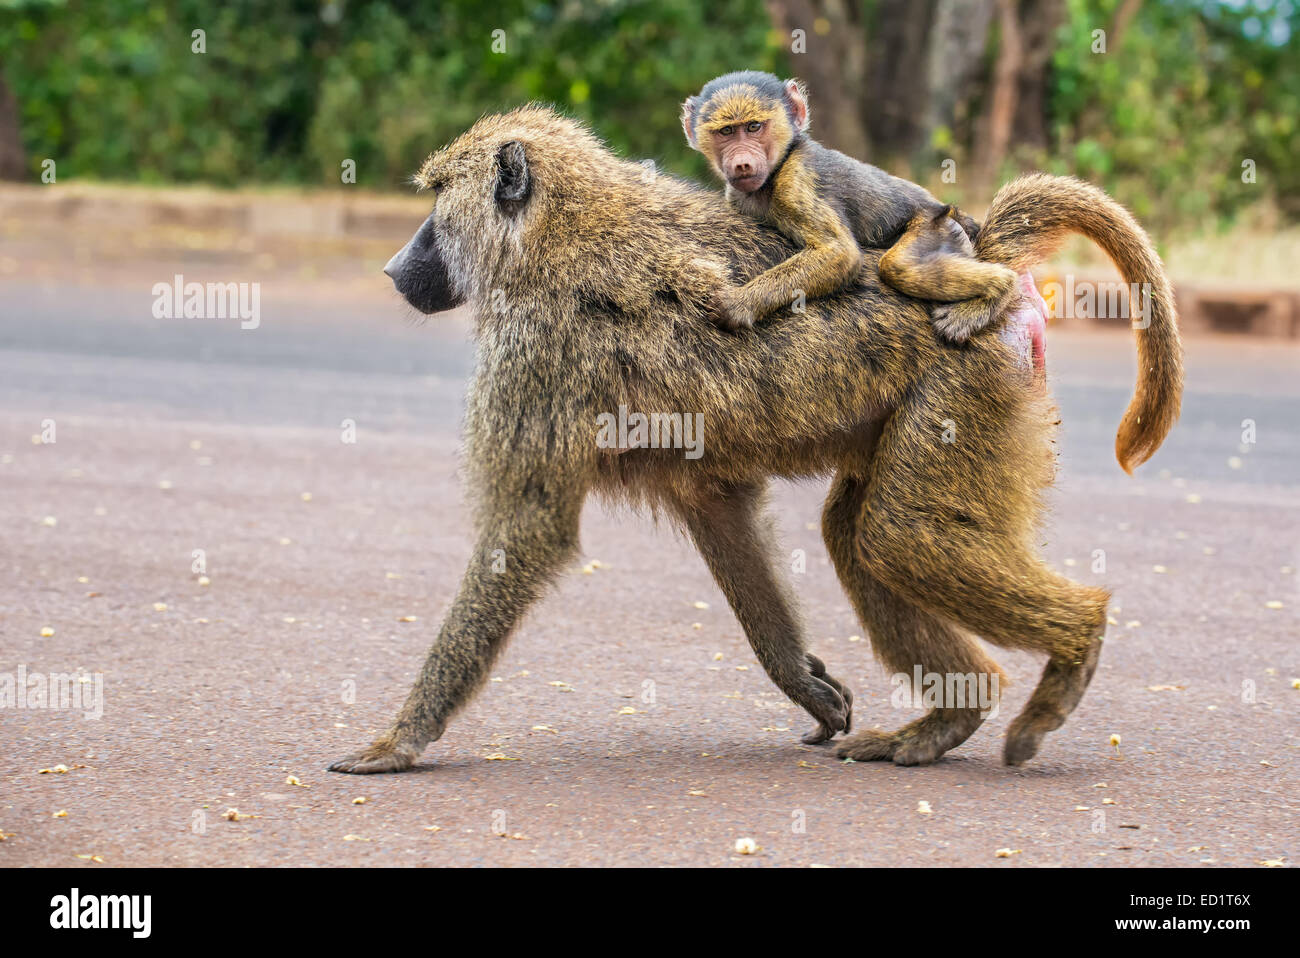 Le babouin Olive mère marcher dans la rue avec son bébé sur le dos dans la zone de conservation de Ngorongoro, en Tanzanie Banque D'Images